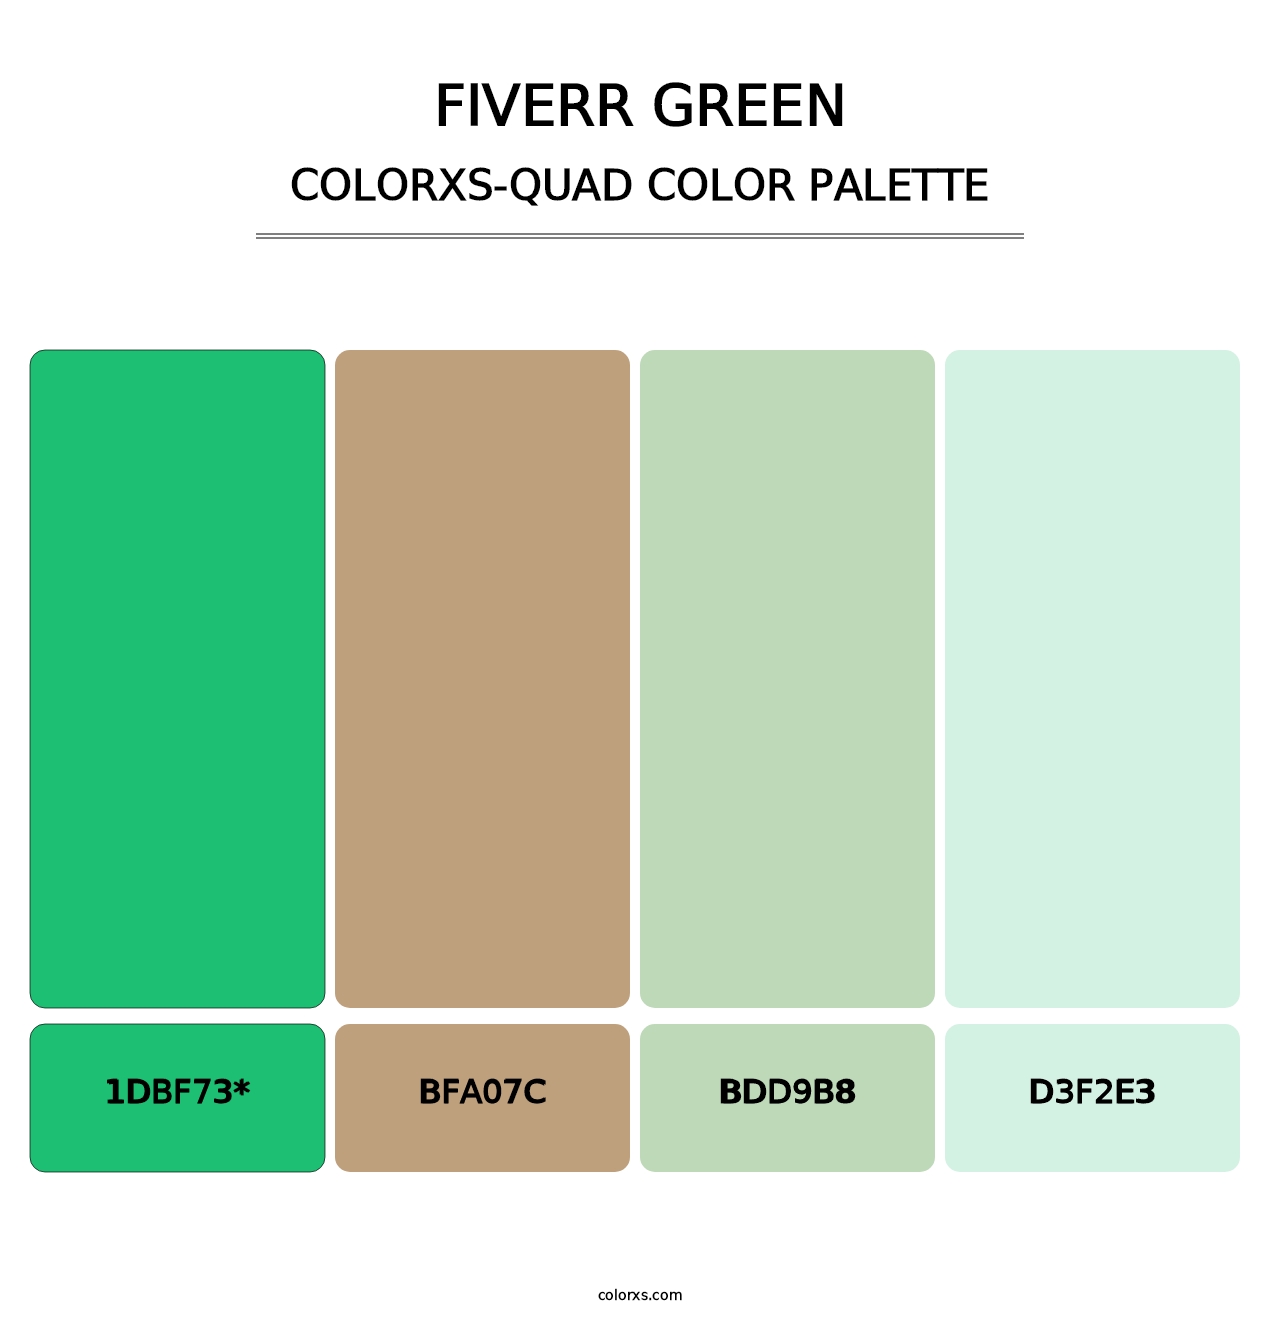 Fiverr Green - Colorxs Quad Palette